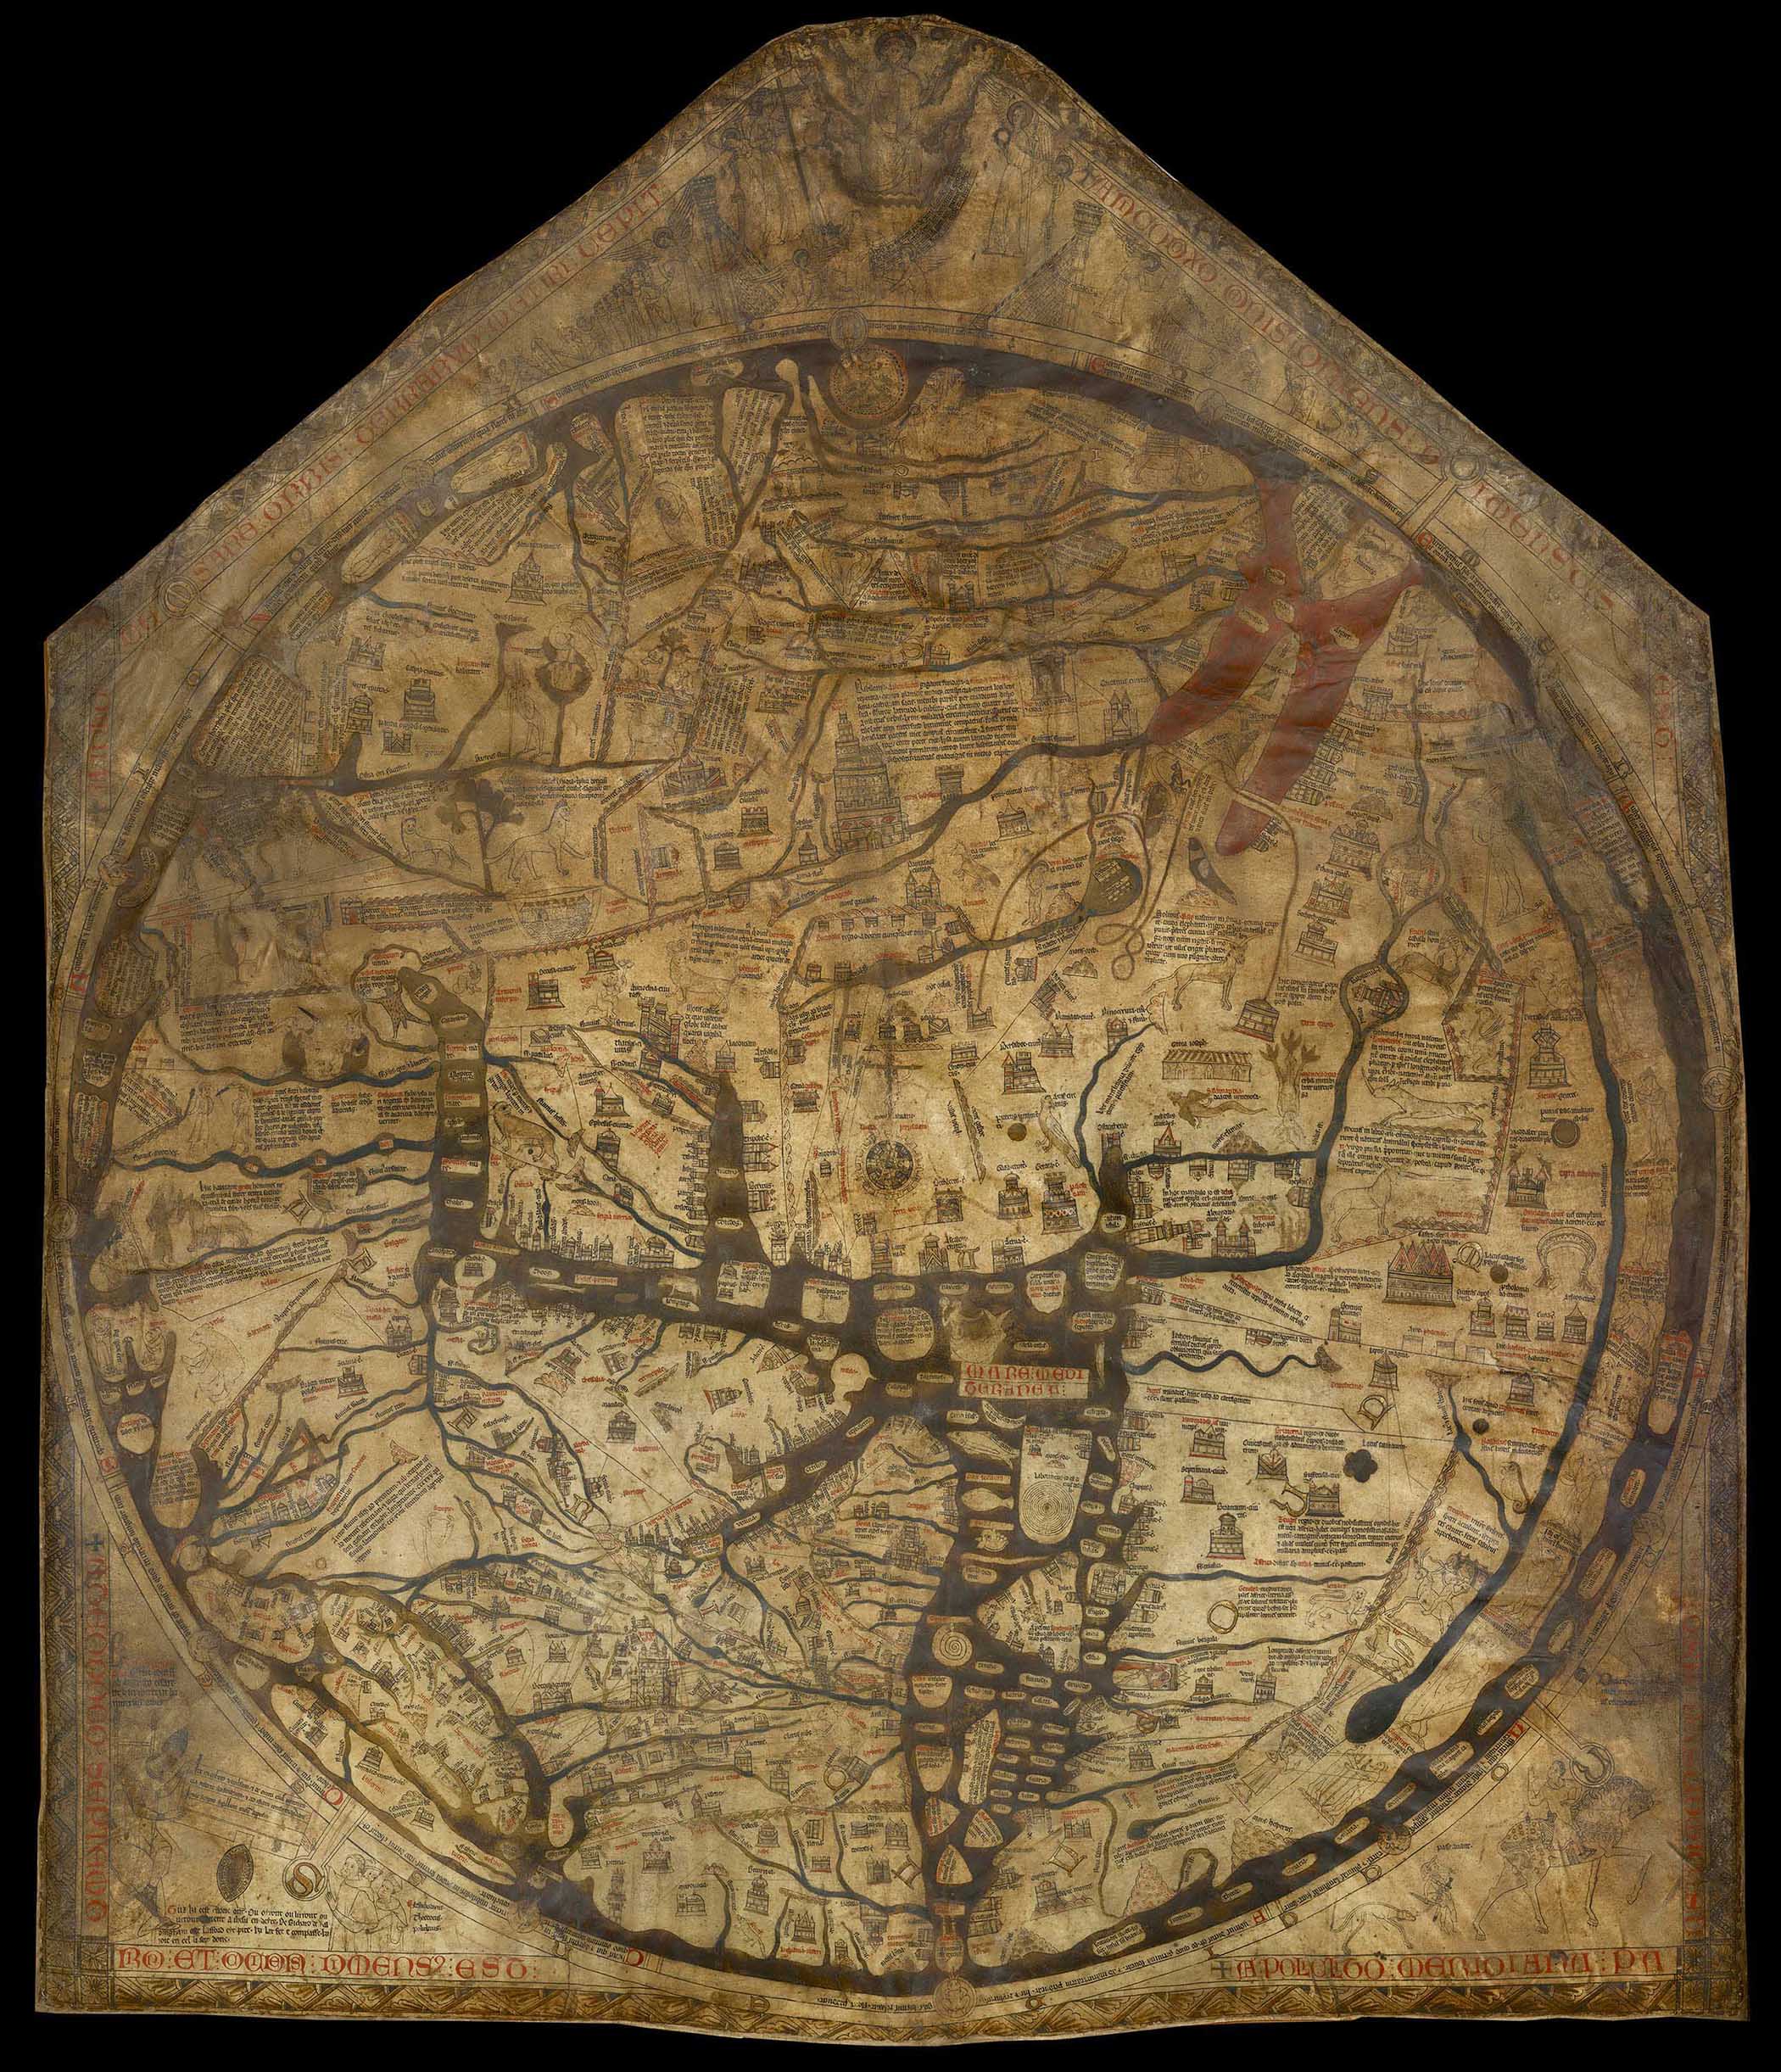 Original Mappa Mundi